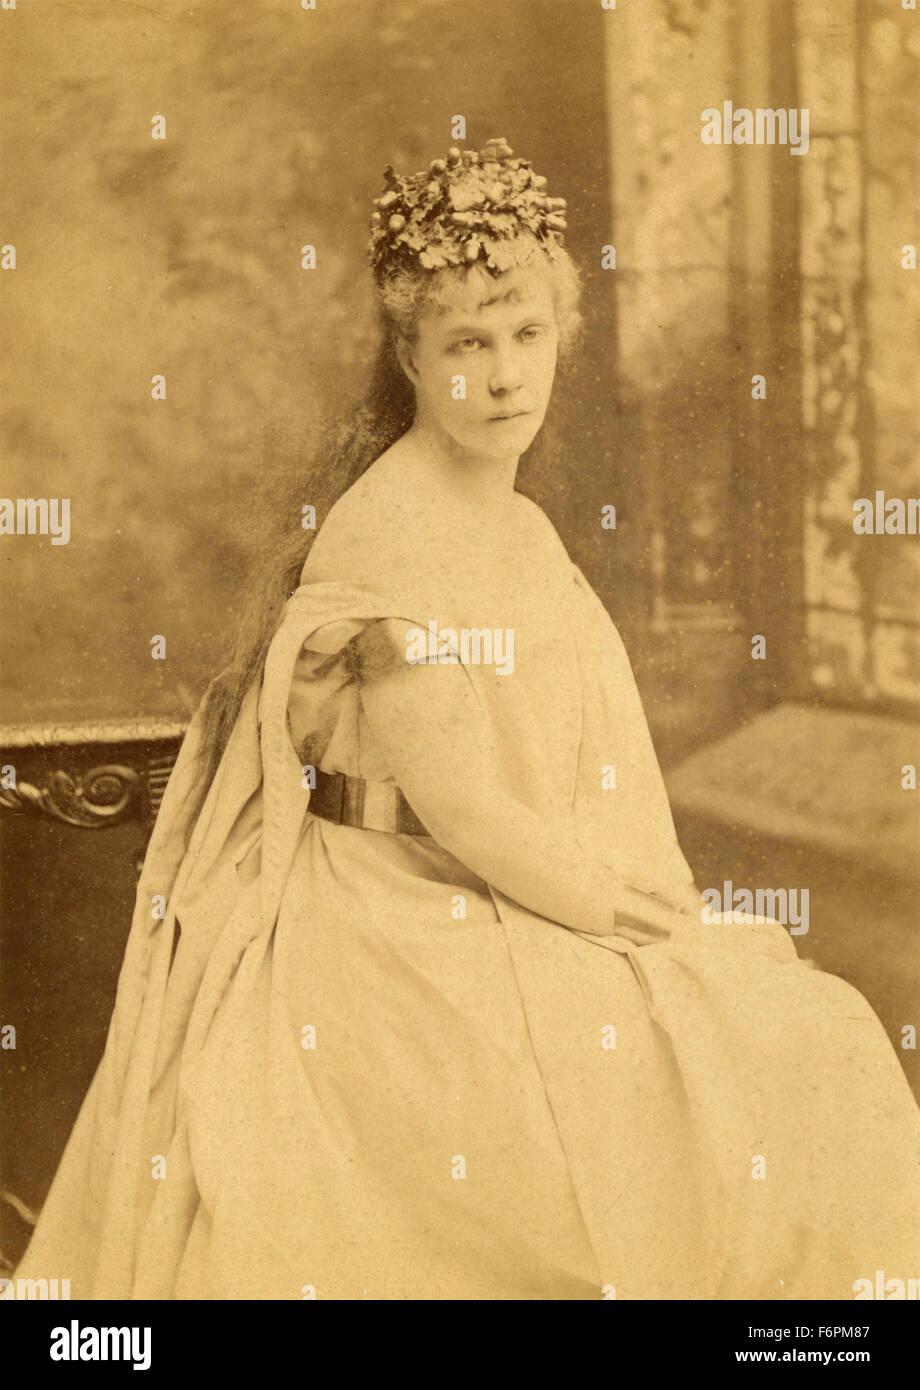 Portrait de femme avec robe, NY, USA Banque D'Images